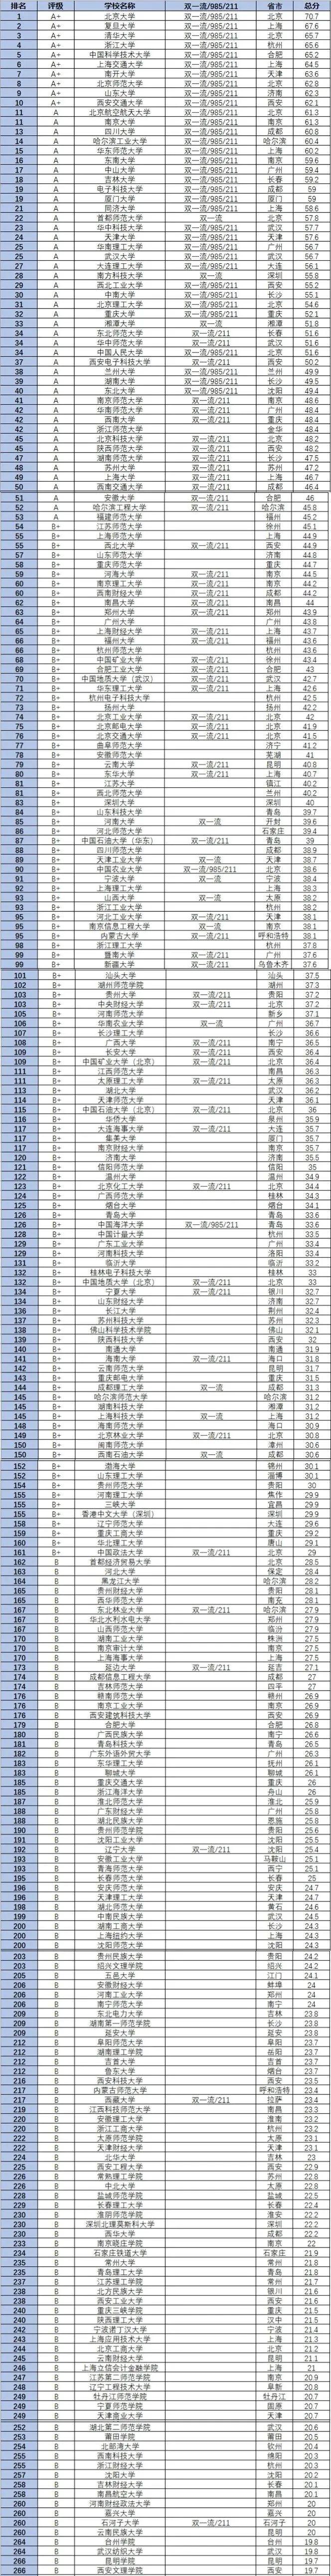 2023中国大学数学专业排名